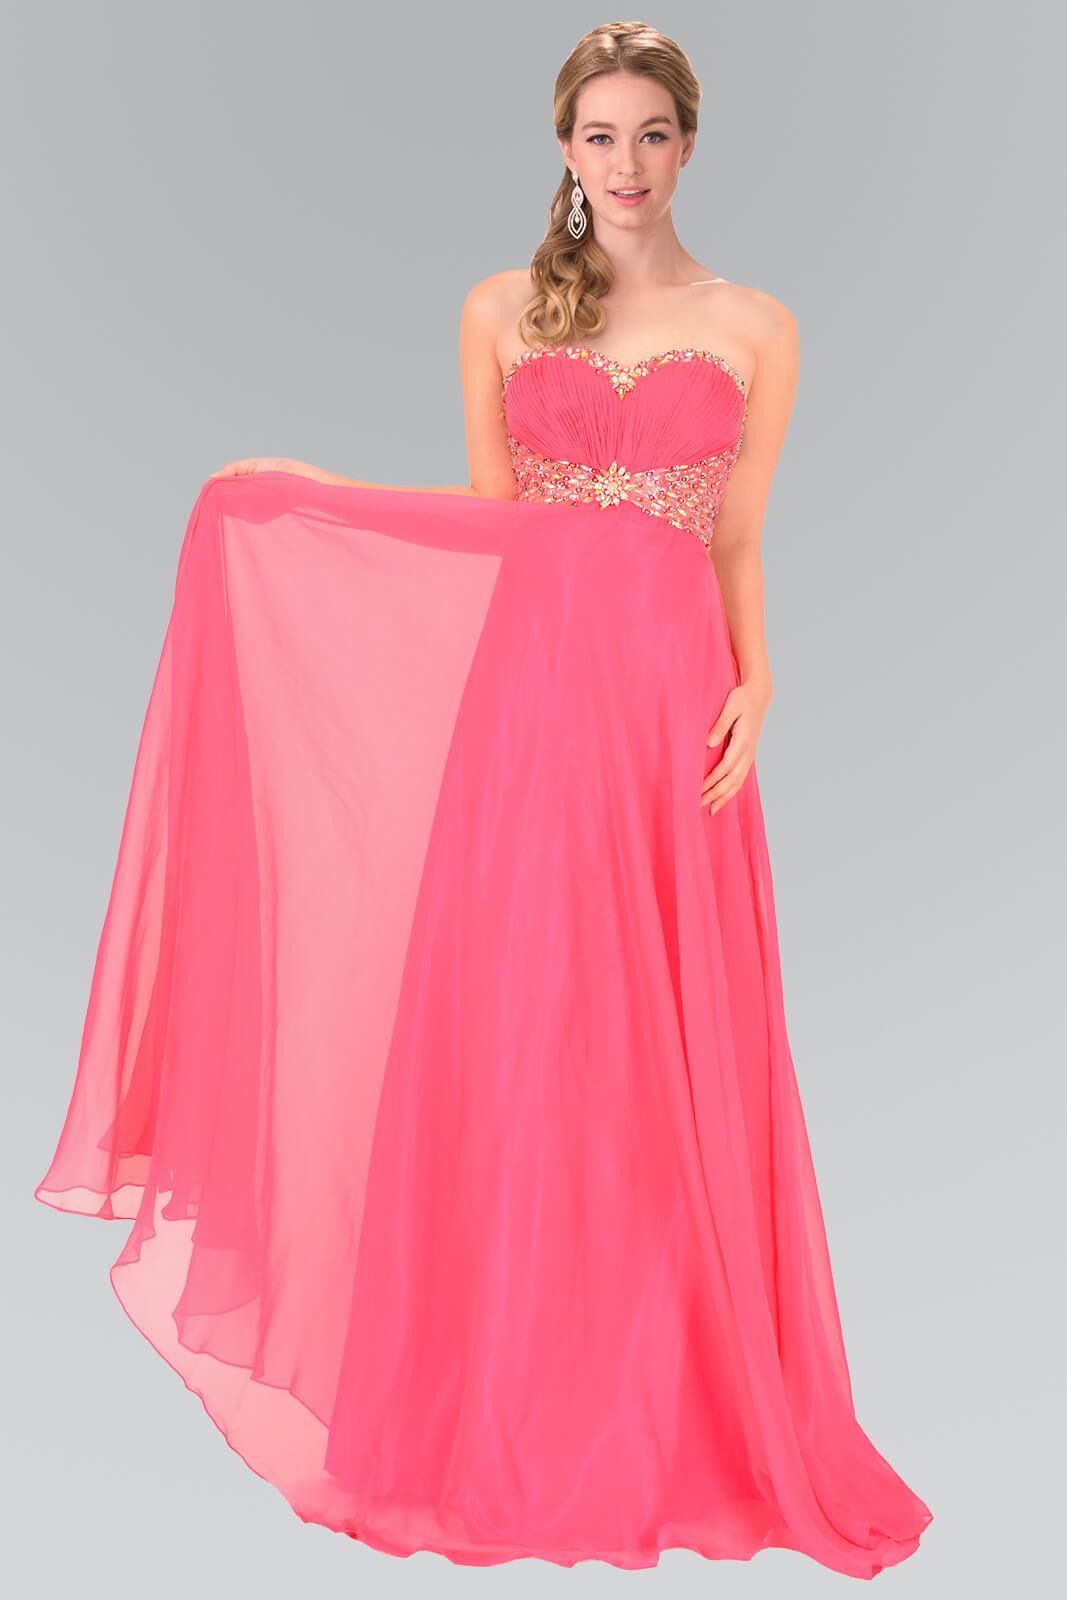 Sweetheart Chiffon Long Prom Dress Formal - The Dress Outlet Elizabeth K